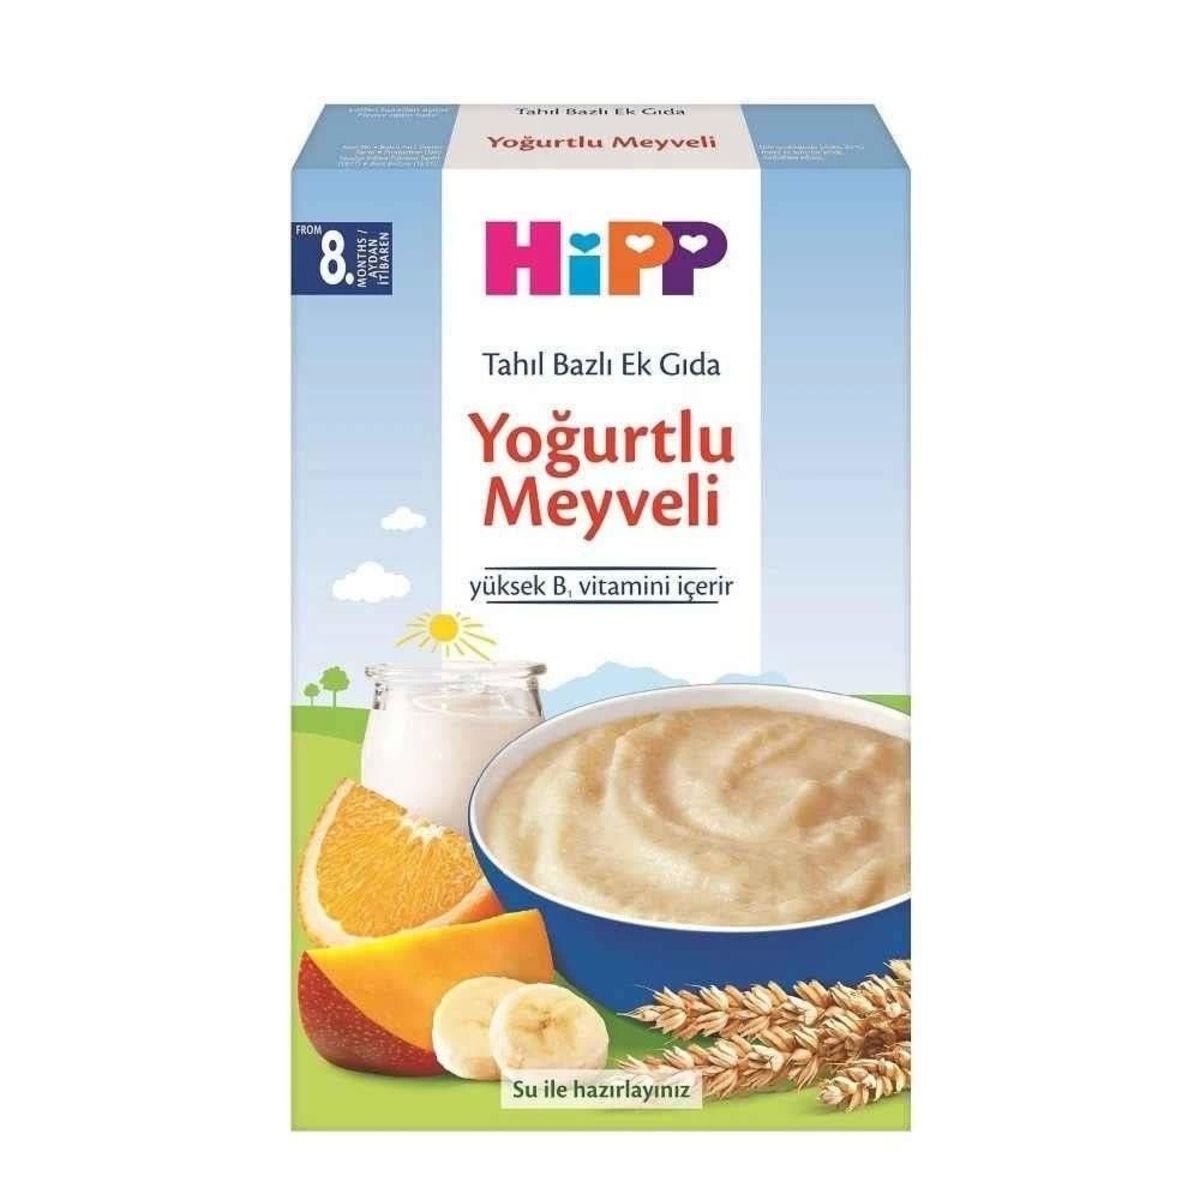 Hipp Organik Sütlü Yoğurtlu Meyveli Tahıl Bazlı Ek Gıda 250gr